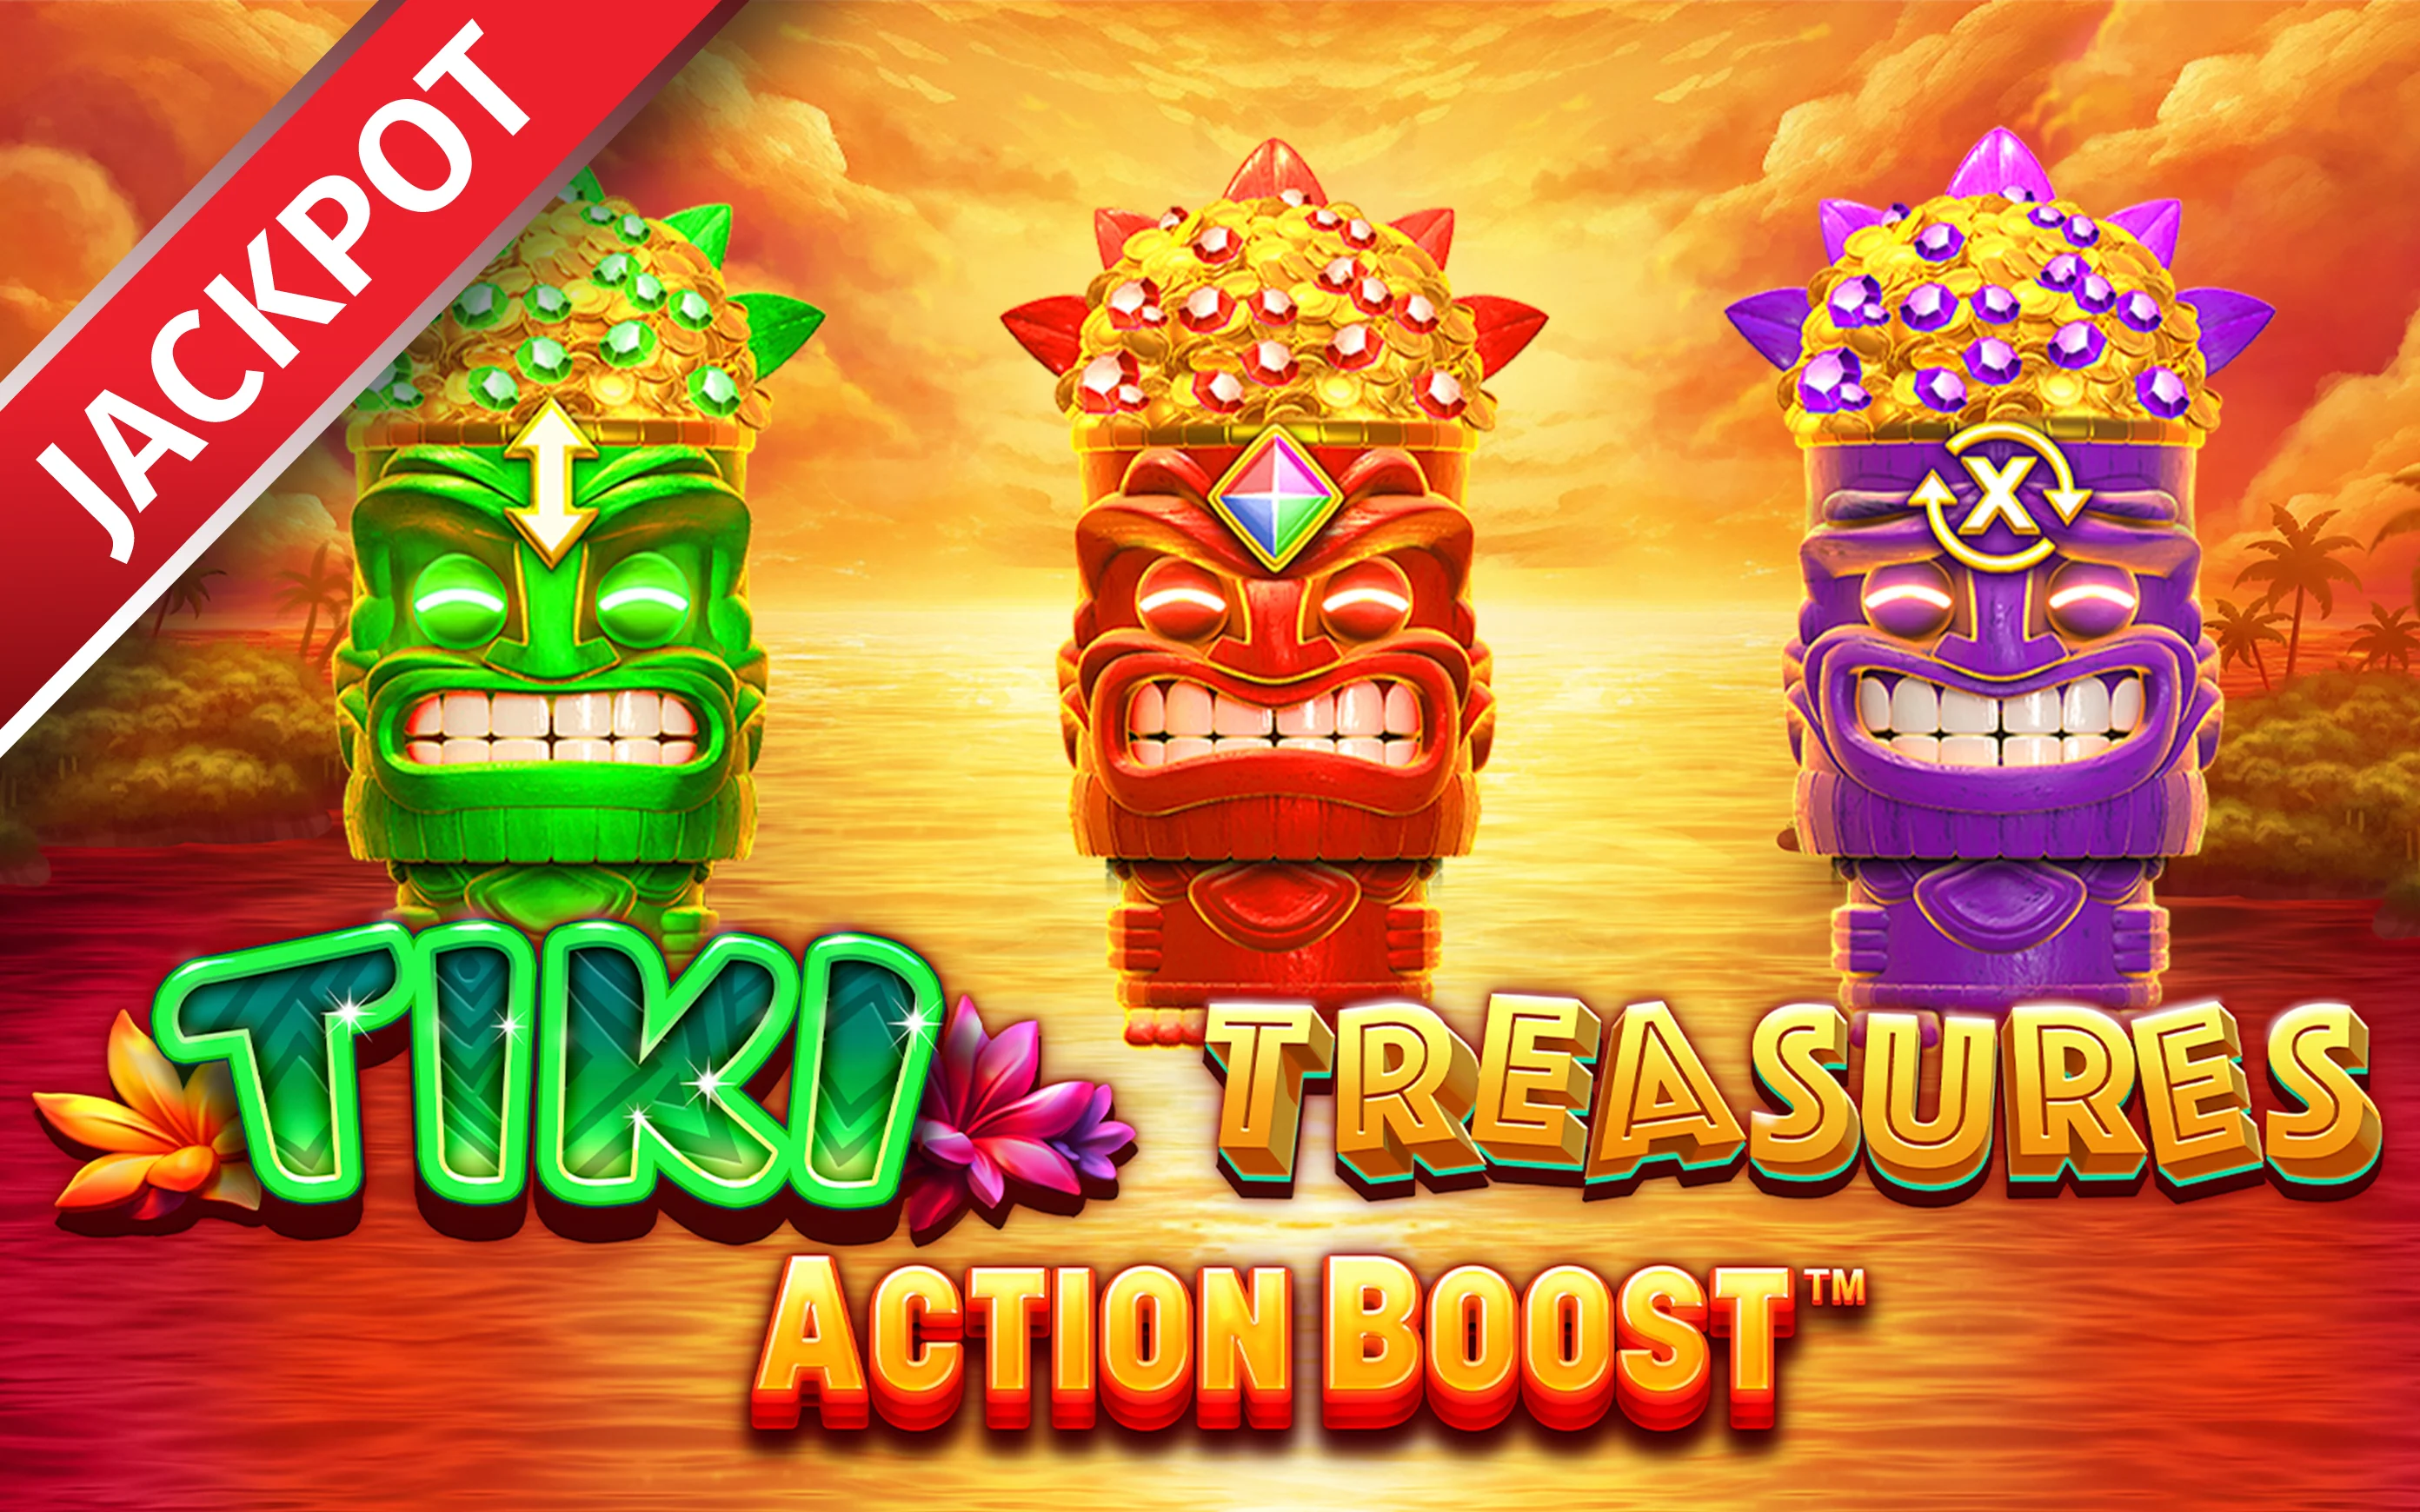 Gioca a Action Boost™ Tiki Treasures sul casino online Starcasino.be